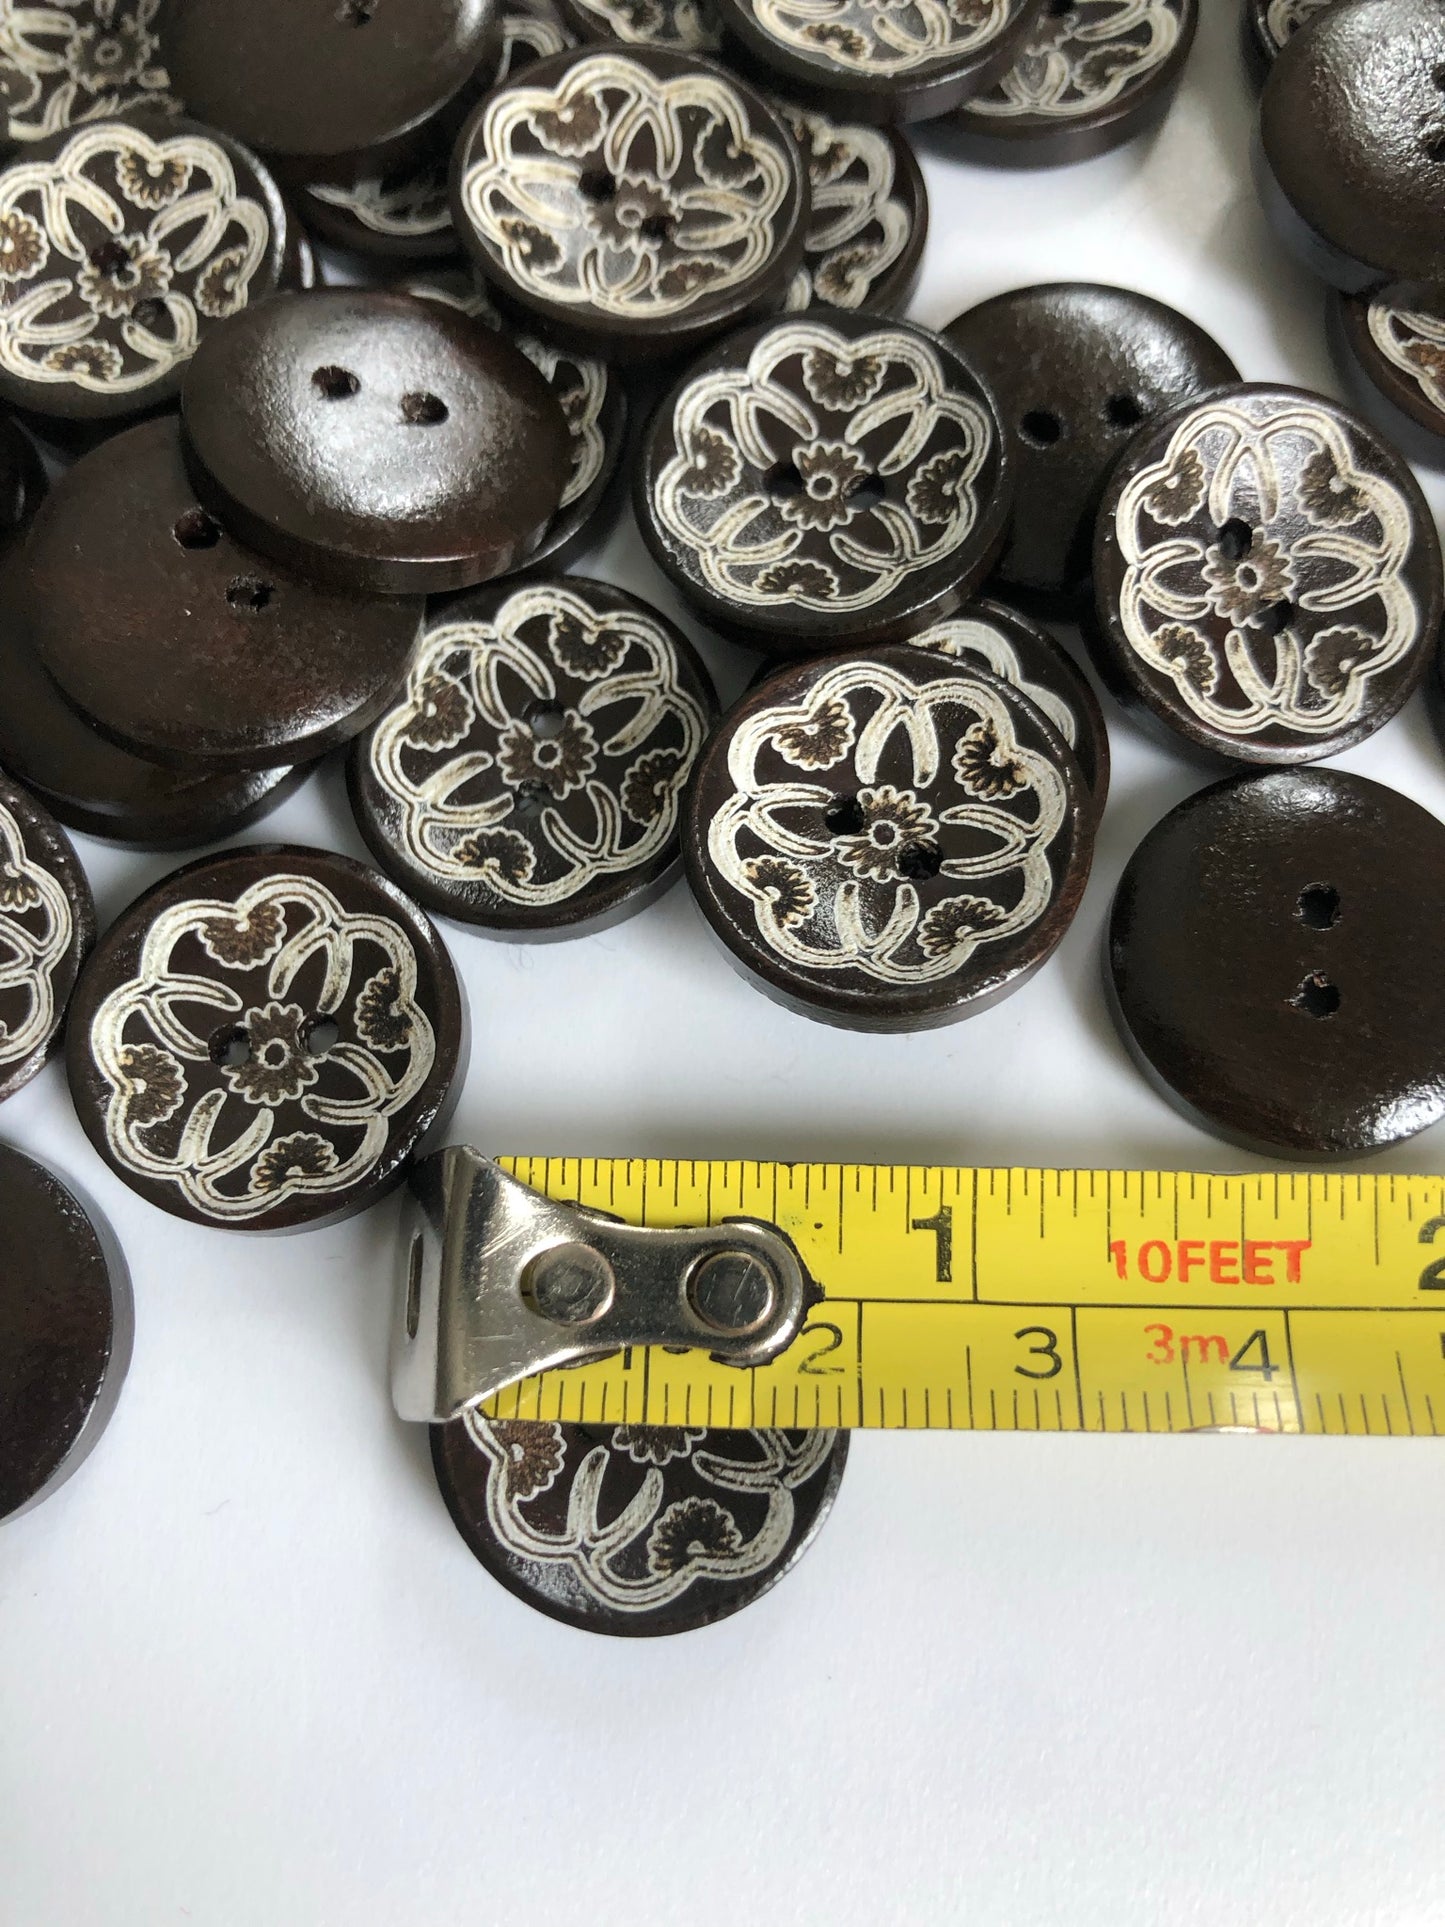 20mm Wooden Buttons